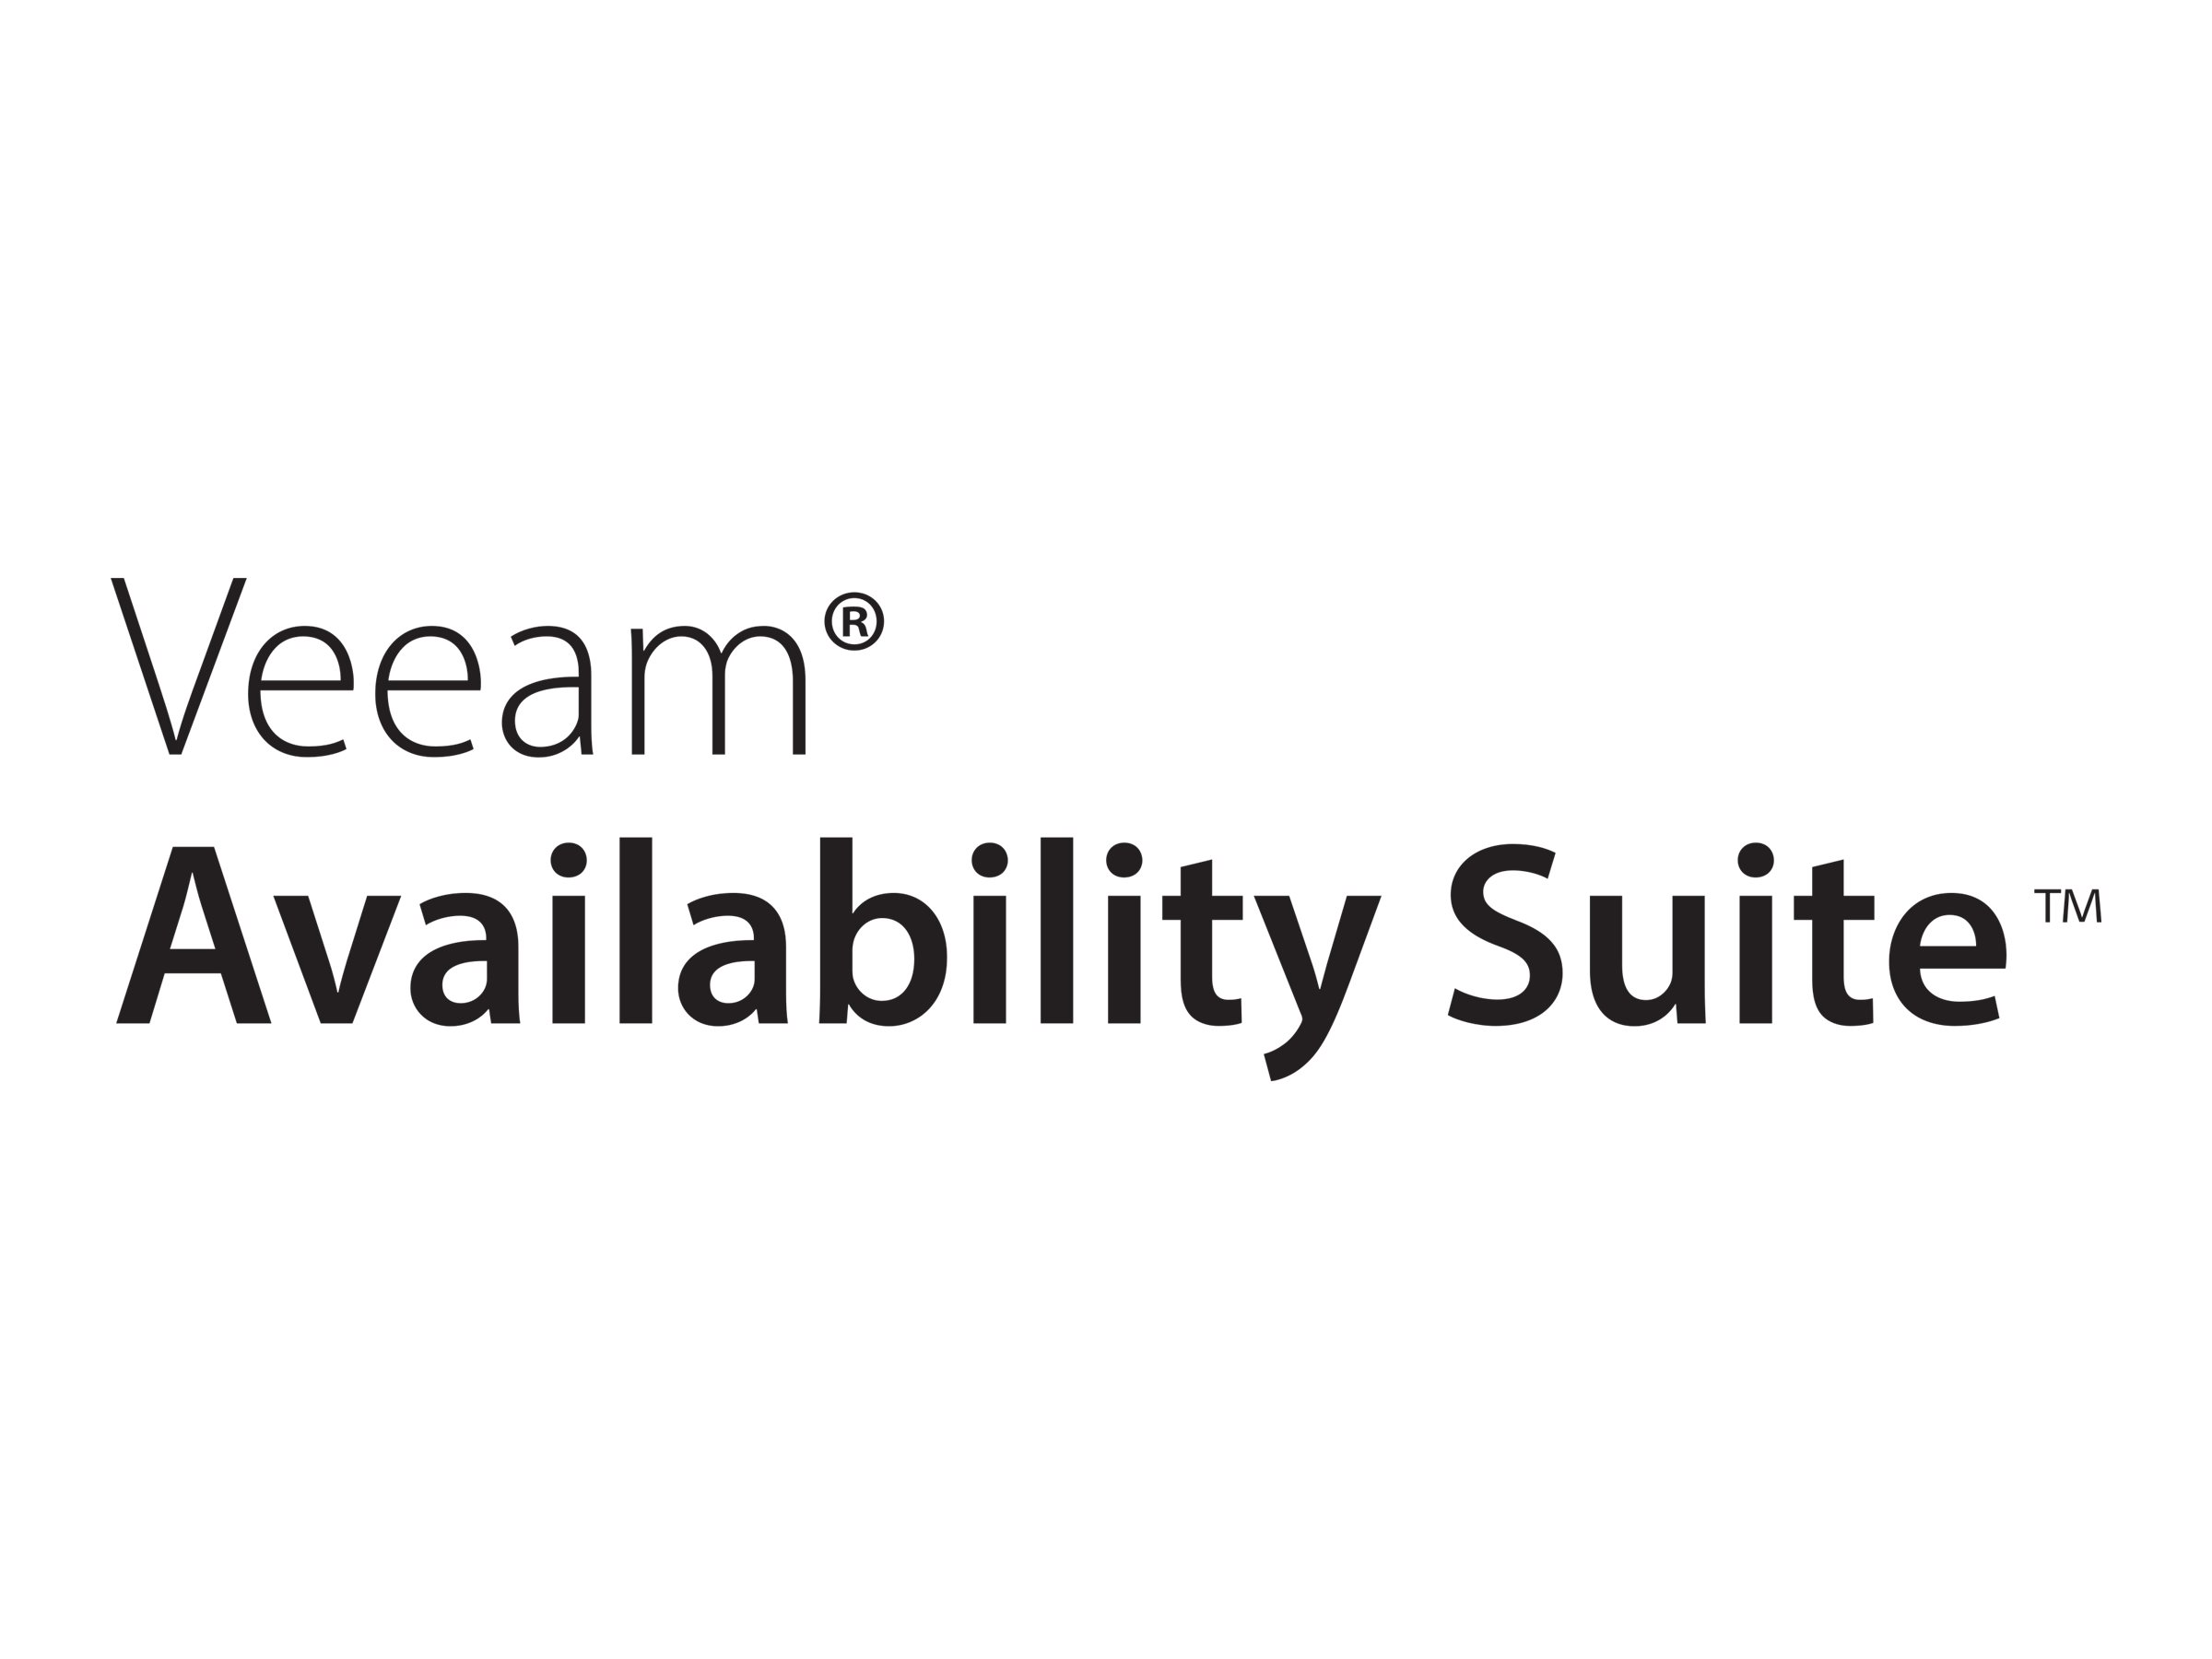 Veeam Availability Suite - Lizenz mit Vorauszahlung (1 Jahr) + Production Support - 1 Anschluss - akademisch